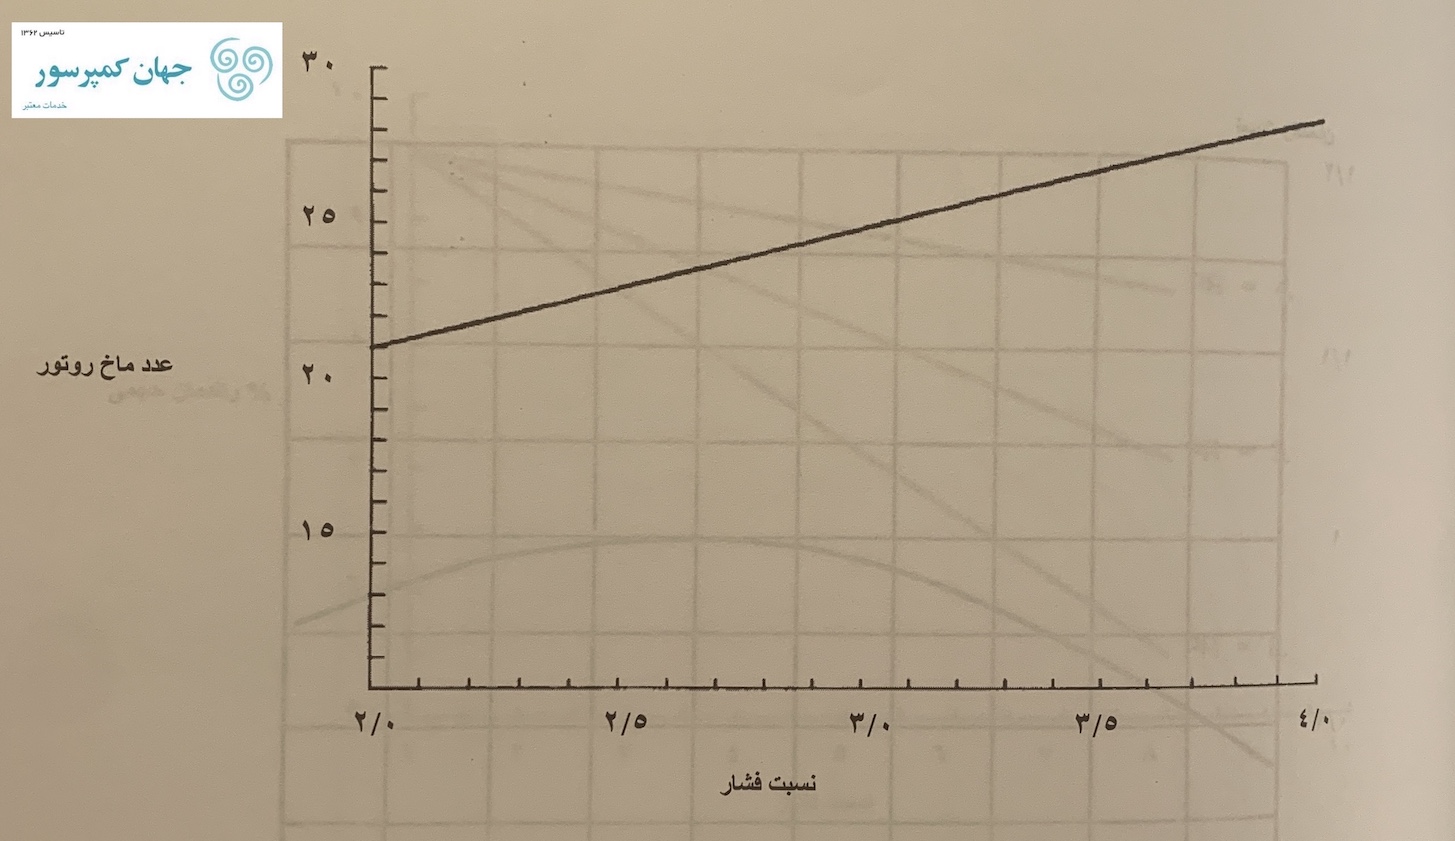 عکس از نمودار عدد ماخ روتور کمپرسور اسکرو